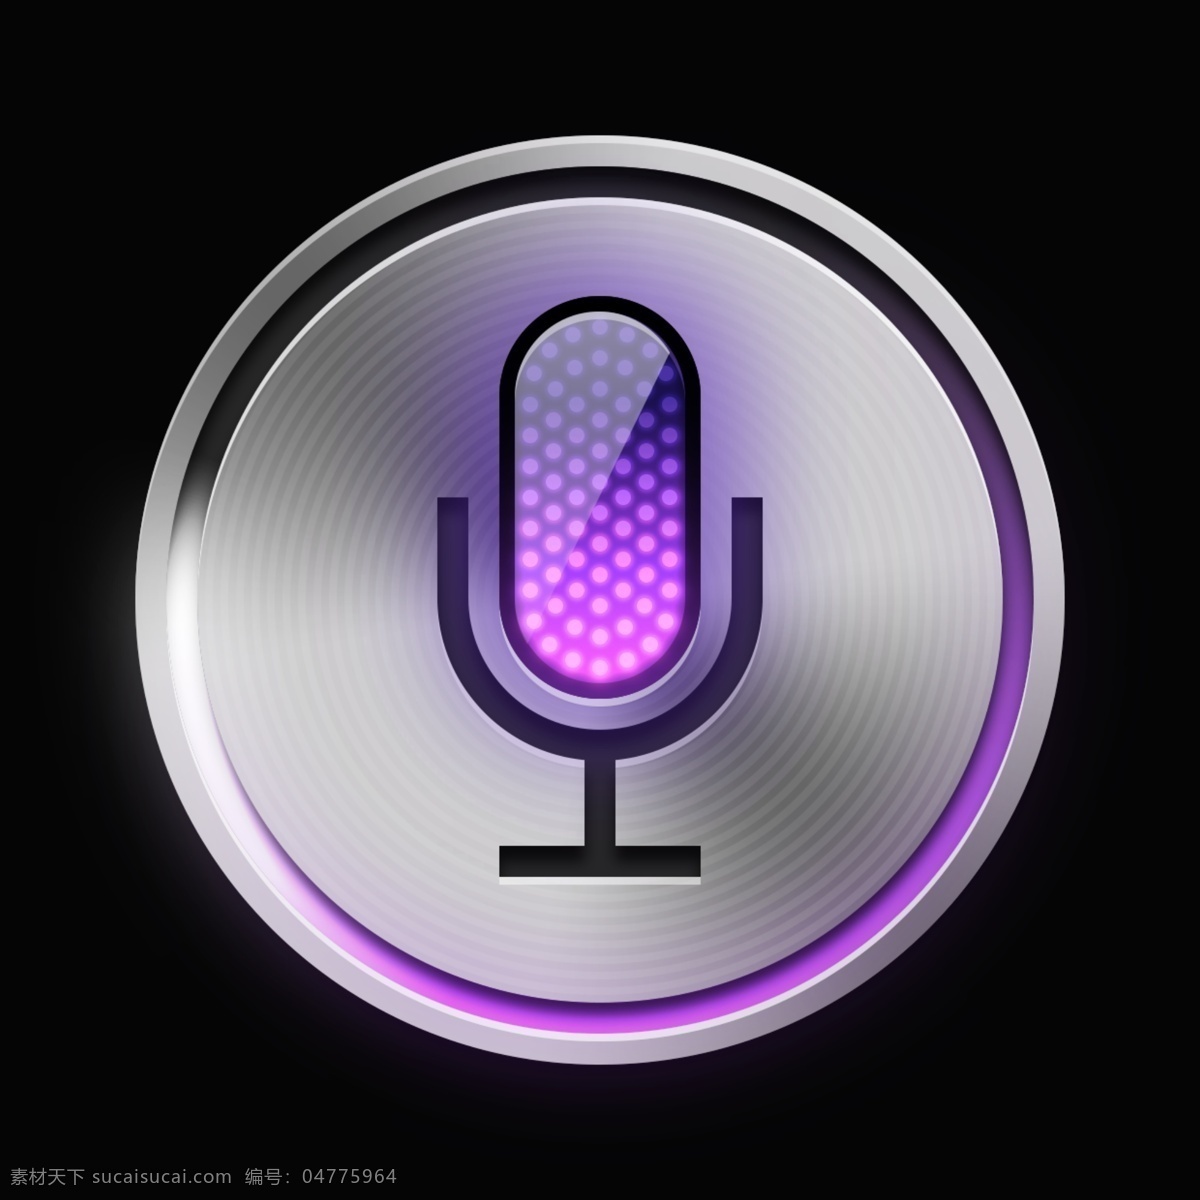 紫色 网页 ui 拉斯 话筒 金属 质感 图标 图标设计 icon icon设计 icon图标 网页图标 话筒图标 麦克风图标 麦克风 话筒icon